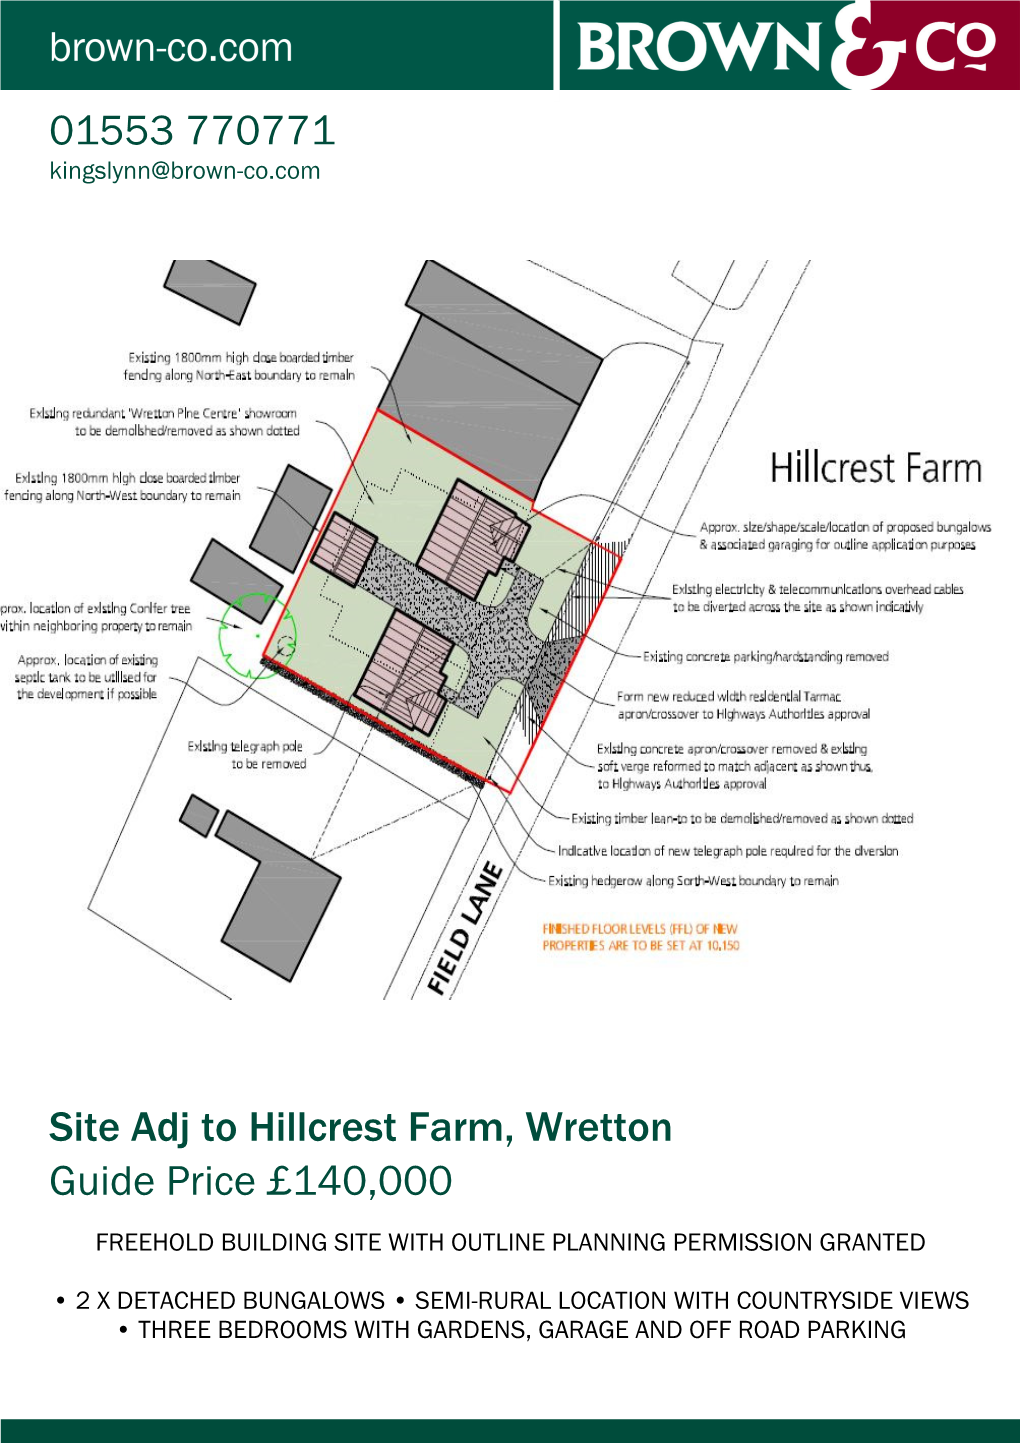 Site Adj to Hillcrest Farm, Wretton Guide Price £140,000 01553 770771